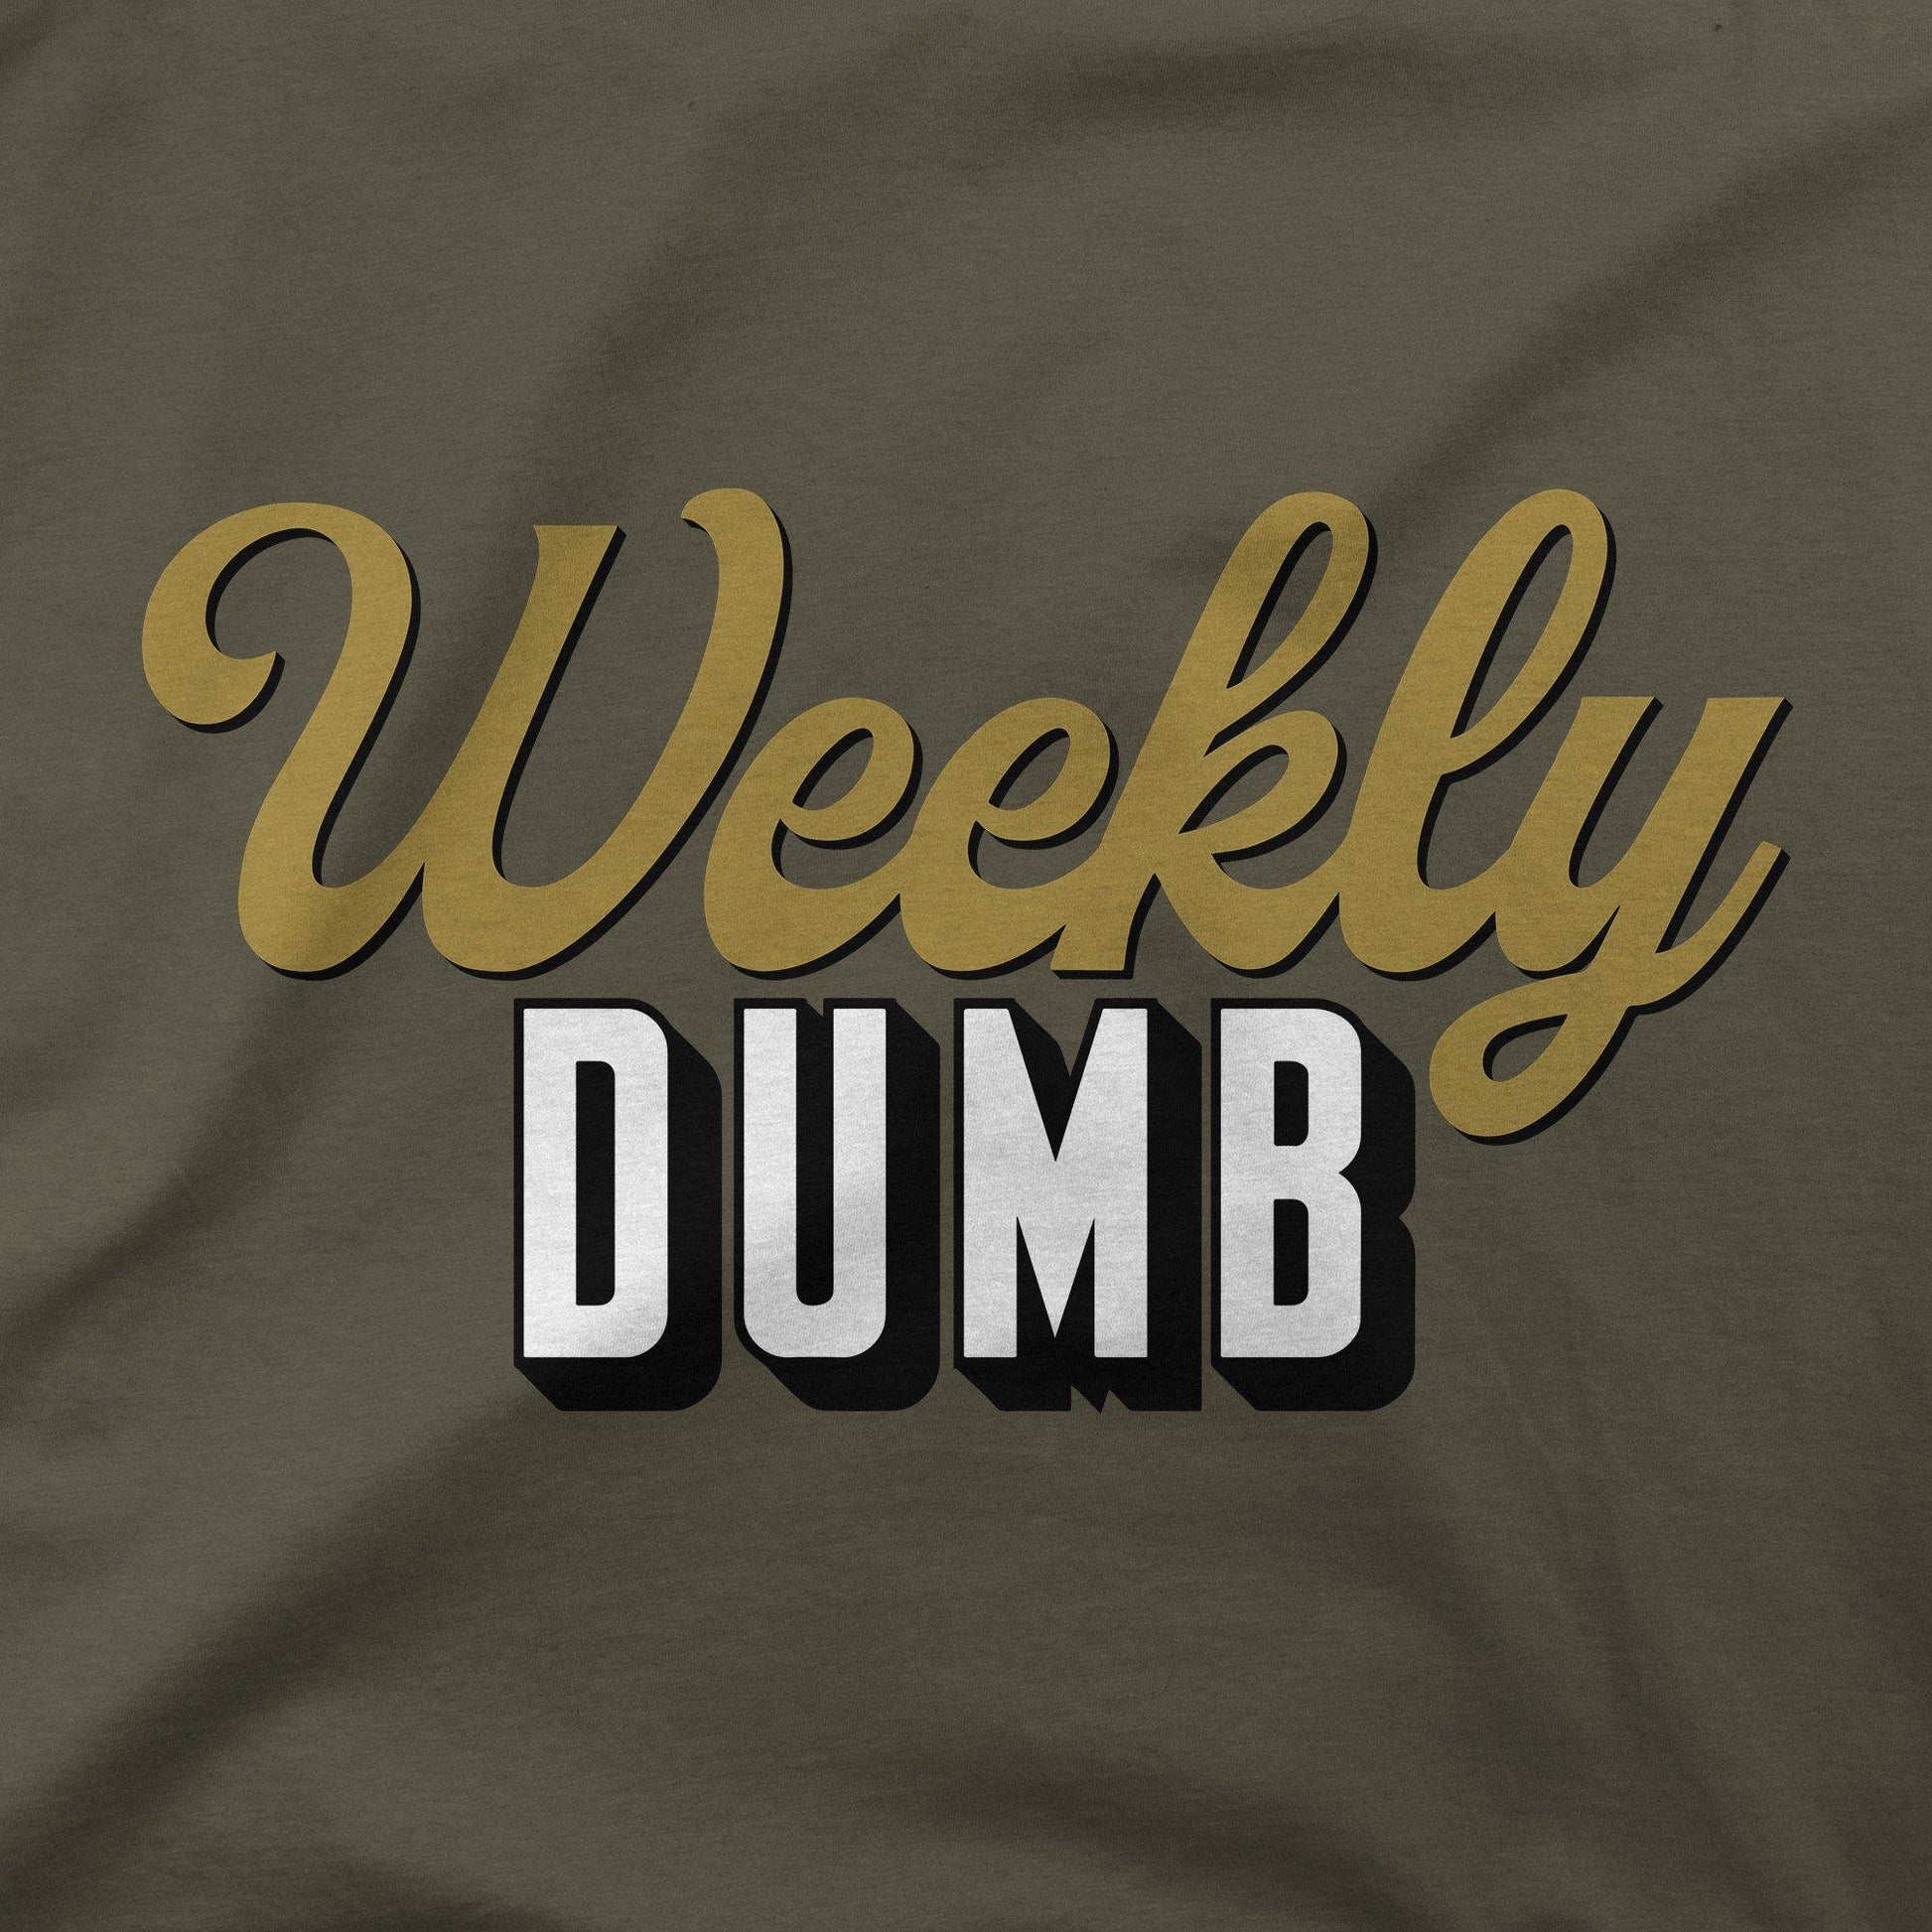 Weekly Dumb | T-Shirt - Jomboy Media